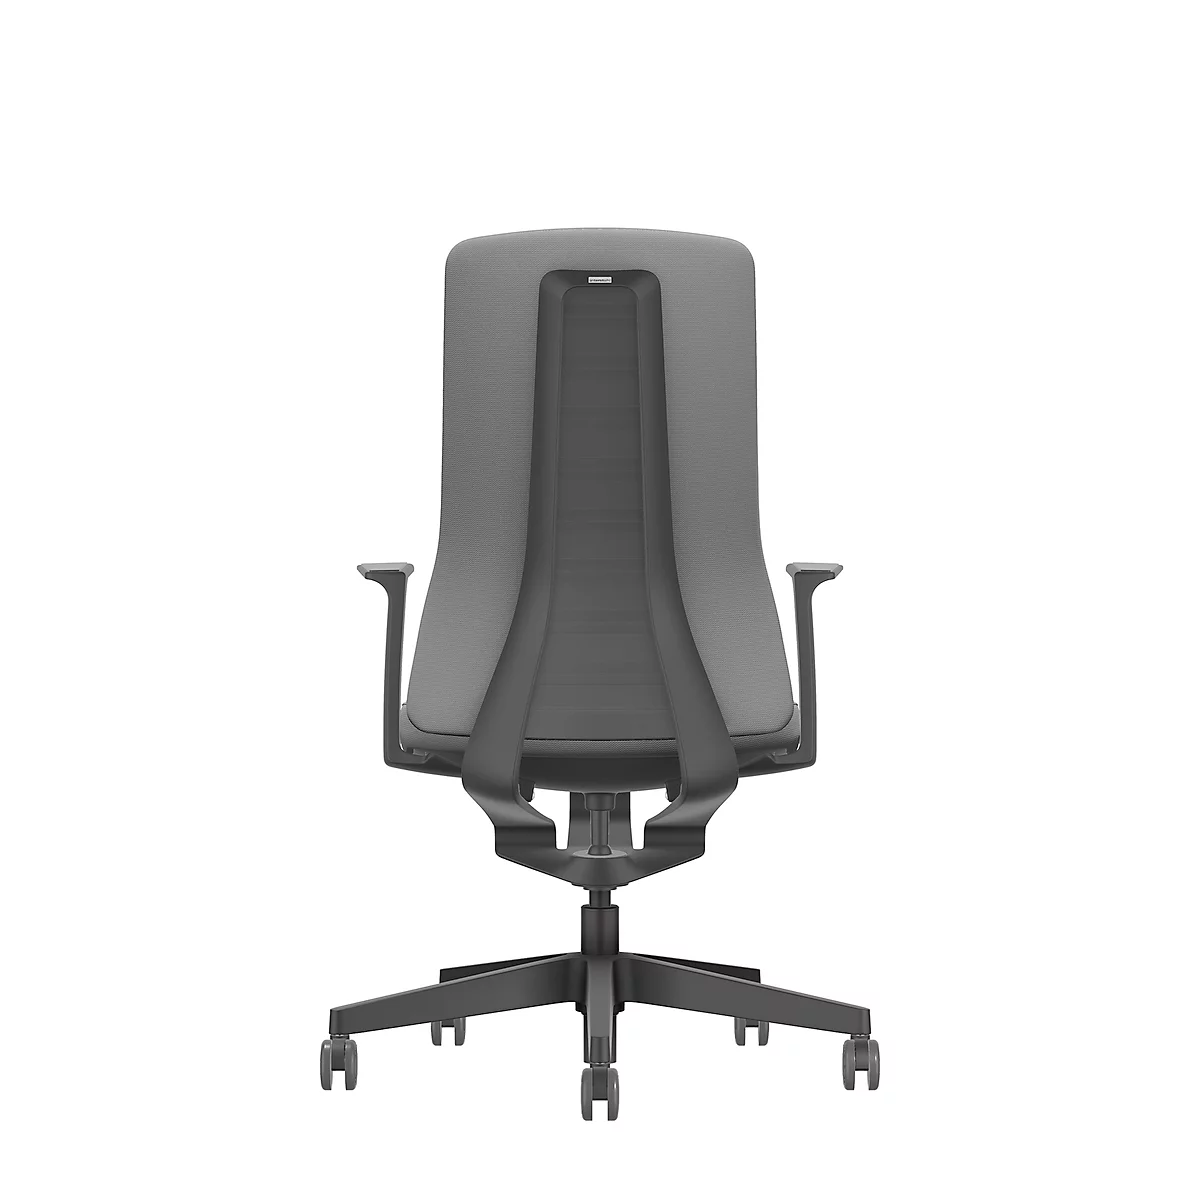 Interstuhl bureaustoel PUREis3, vaste armleuningen, 3D auto-synchroonmechanisme, kuipzitting, gestoffeerde rug, ijzergrijs/zwart